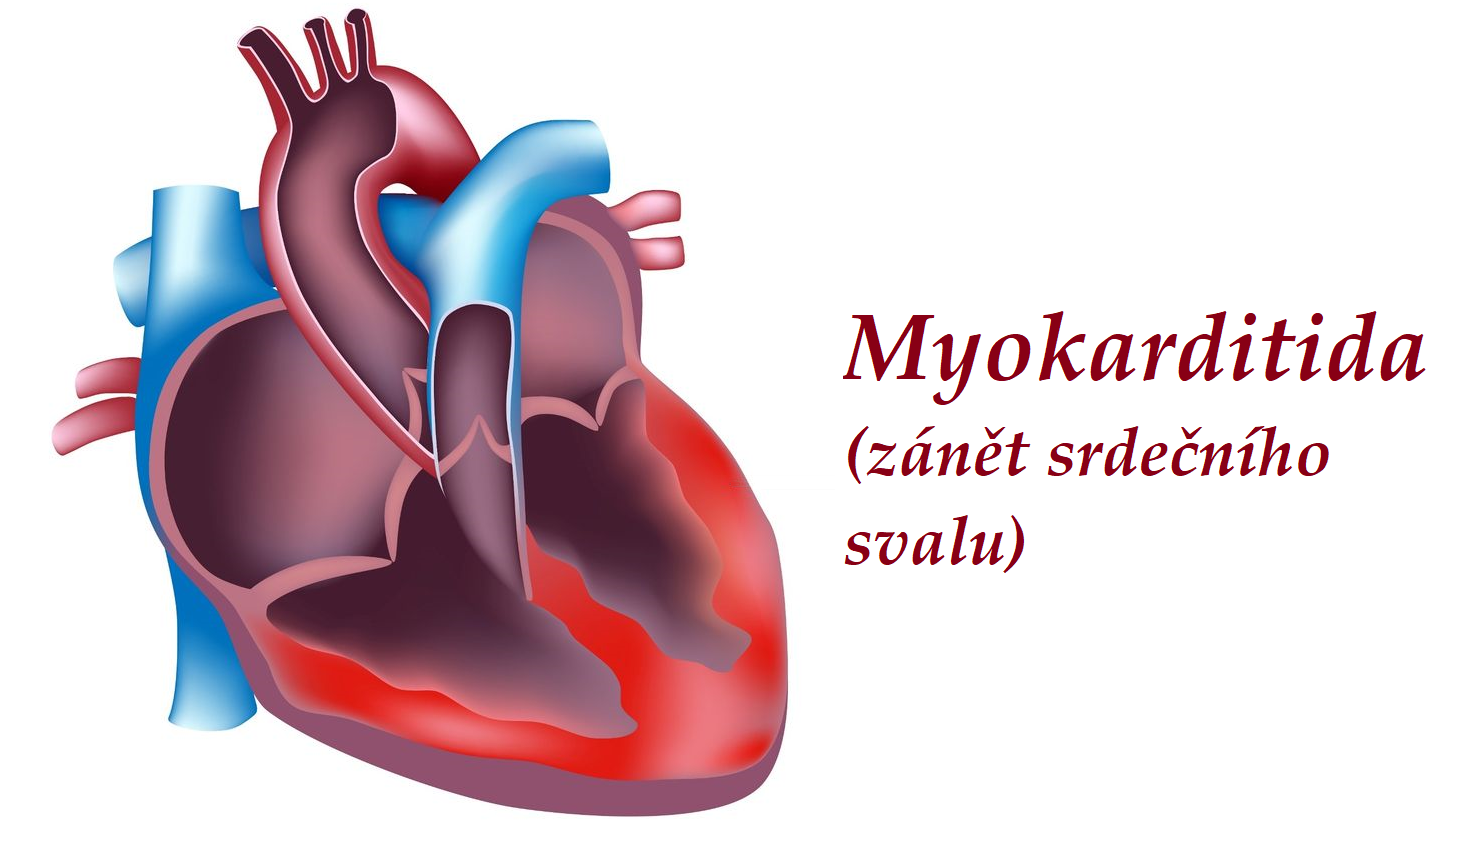 myokarditida zanet srdecniho svalu priznaky projevy symptomy pricina lecba